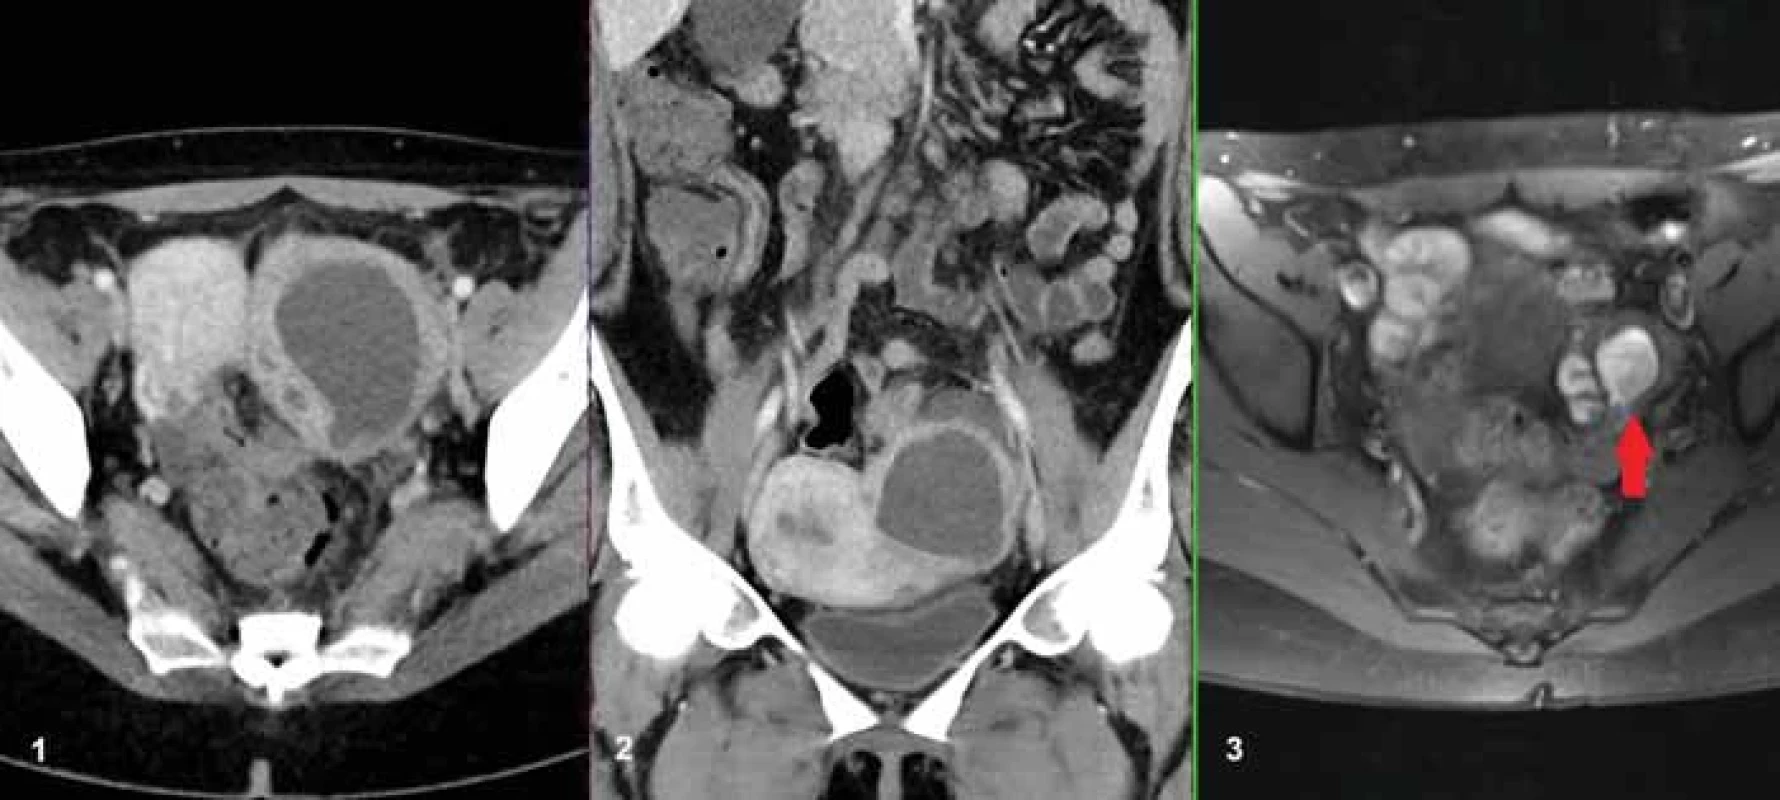 36letá pacientka vyšetřená na konci šestinedělí pro trvající bolesti břicha a známky zánětu v laboratorním obraze. Na obr. A a B je patrný TOA v axiální a koronární rovině na levém ovariu. Na obr. C je v MR obraze v T1 vážení s potlačením signálu tuku provedeném 1 rok před porodem patrna endometroidní cysta na levém ovariu (červená šipka). 